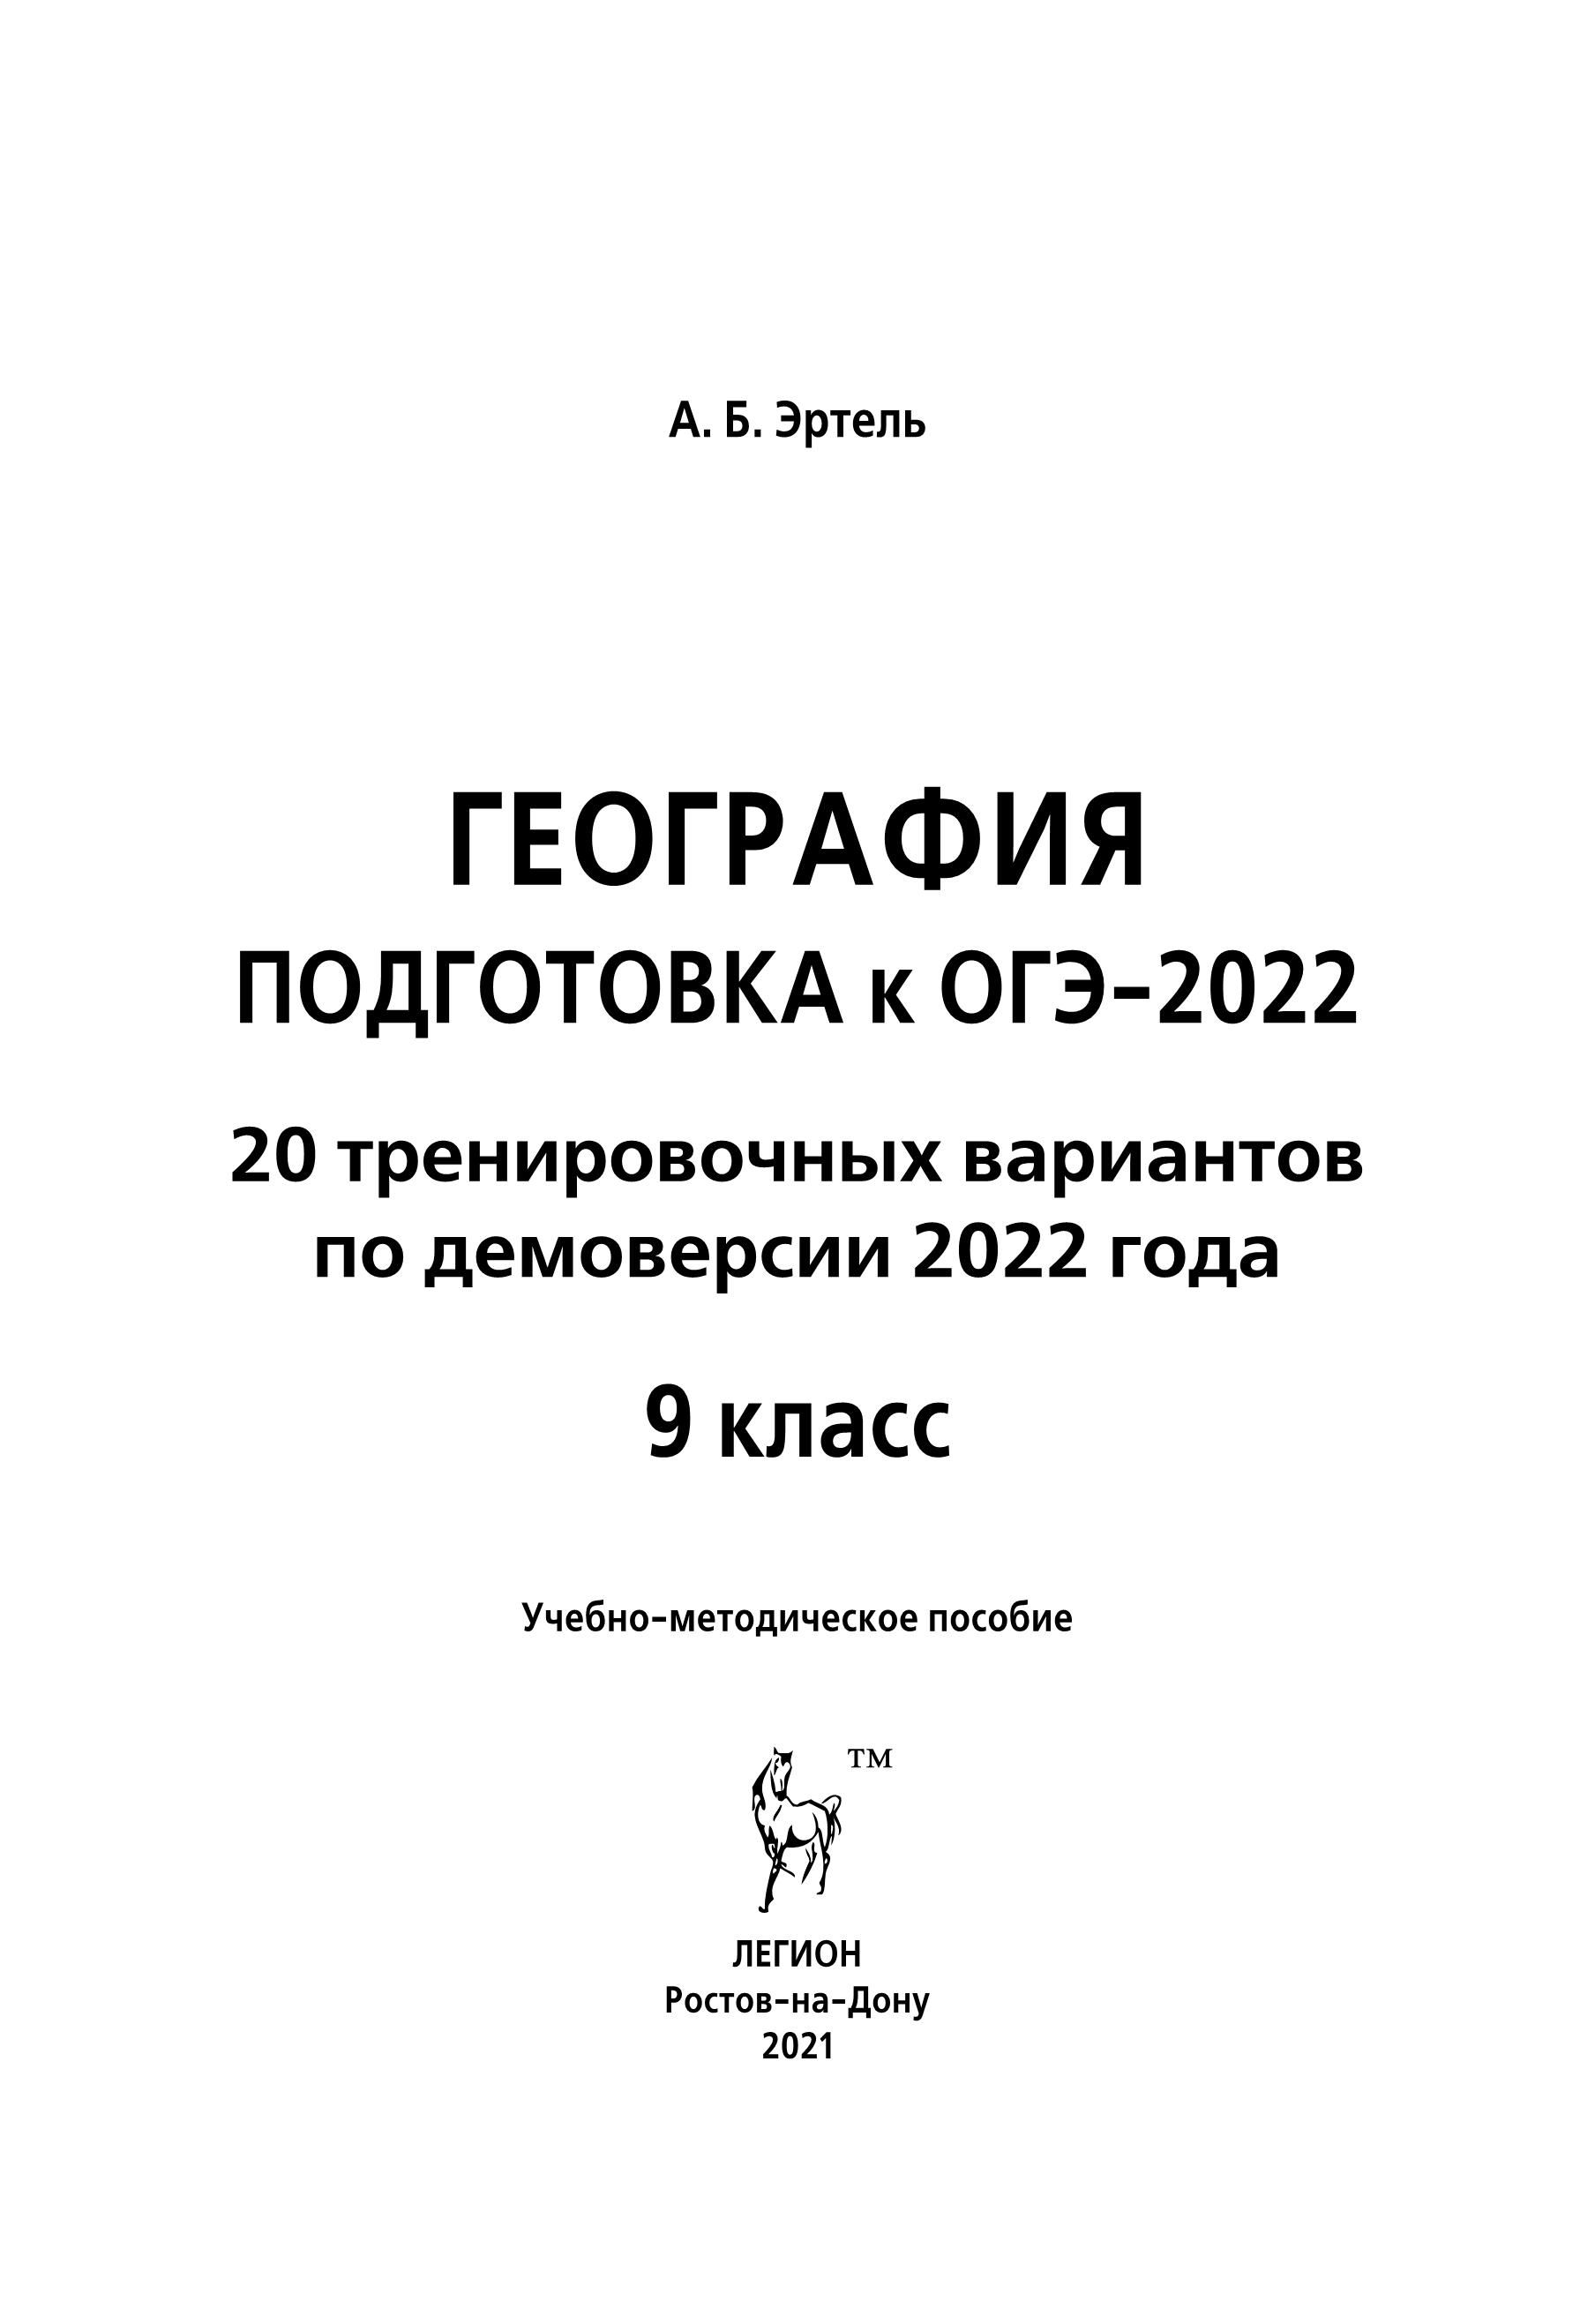 География. Подготовка к ОГЭ-2022. 9 класс. 20 тренировочных вариантов по демоверсии 2022 года